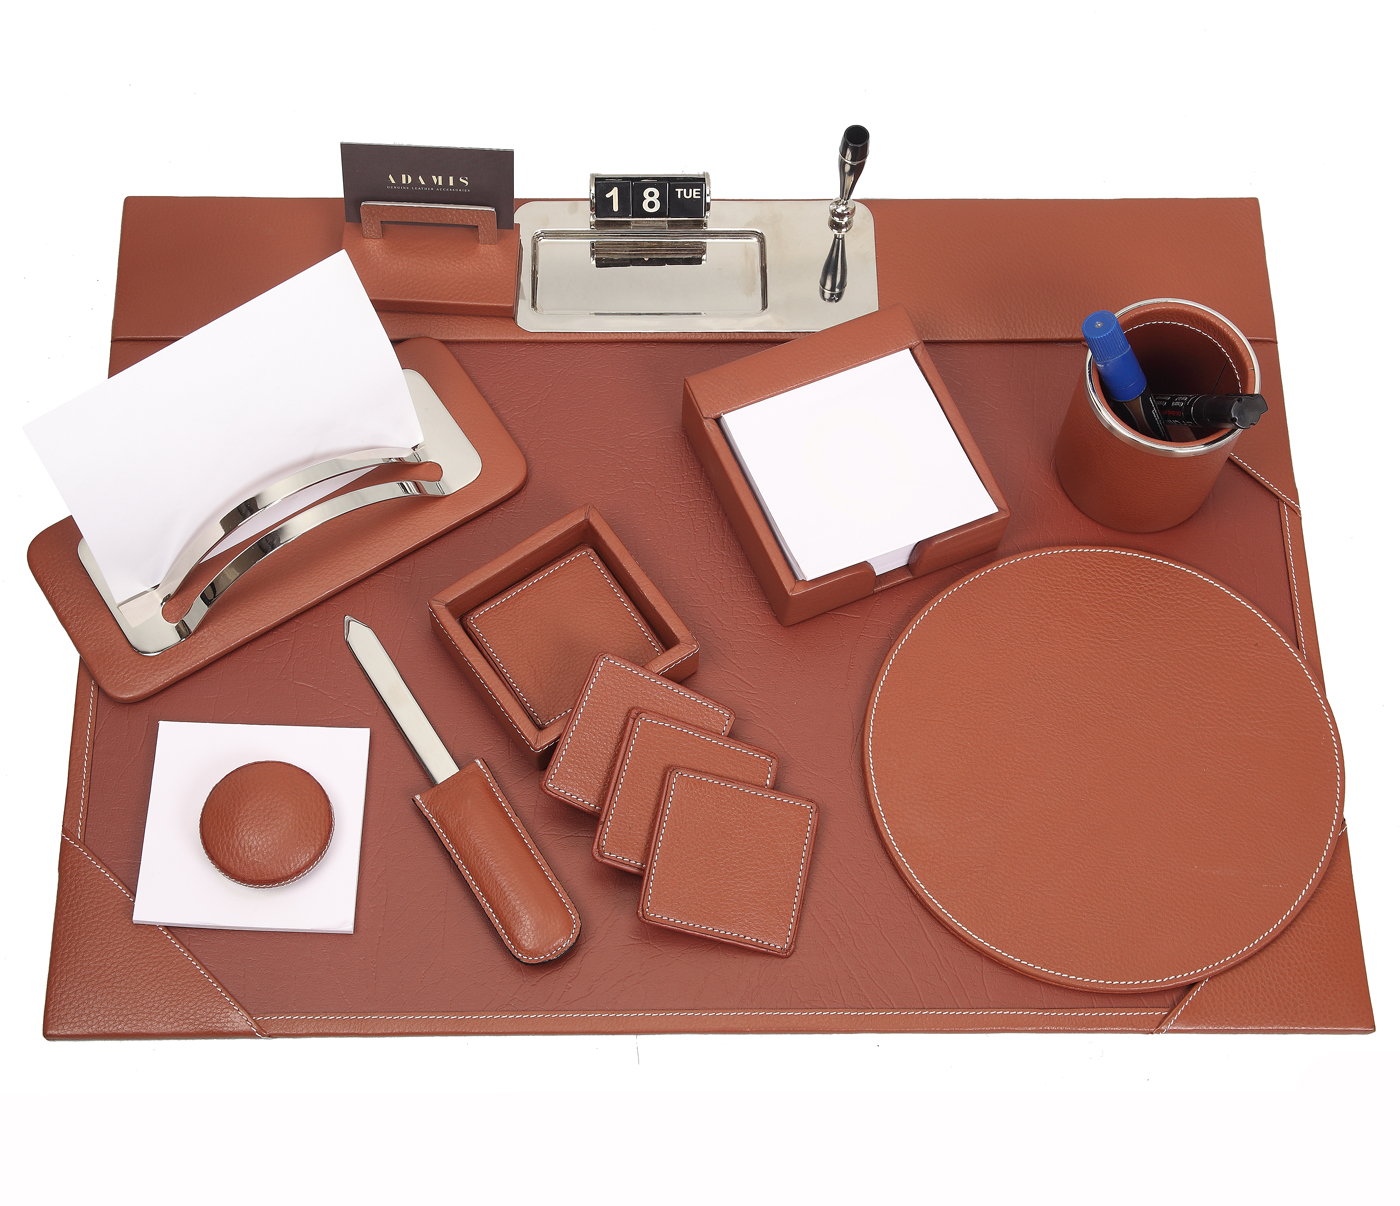  Leather Desk Set(Tan)DSK1